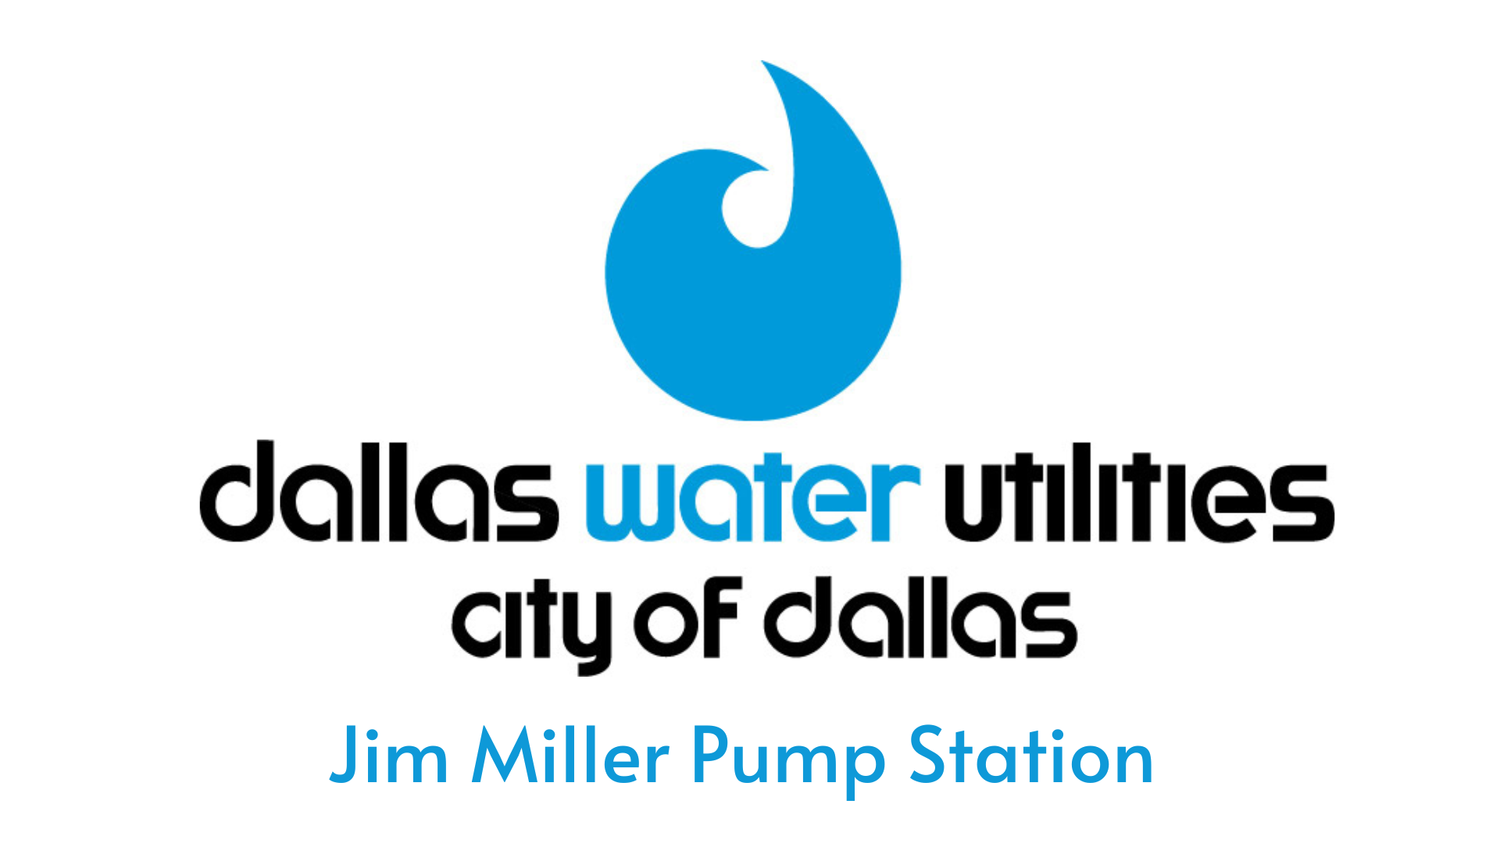 Jim Miller Pump Station